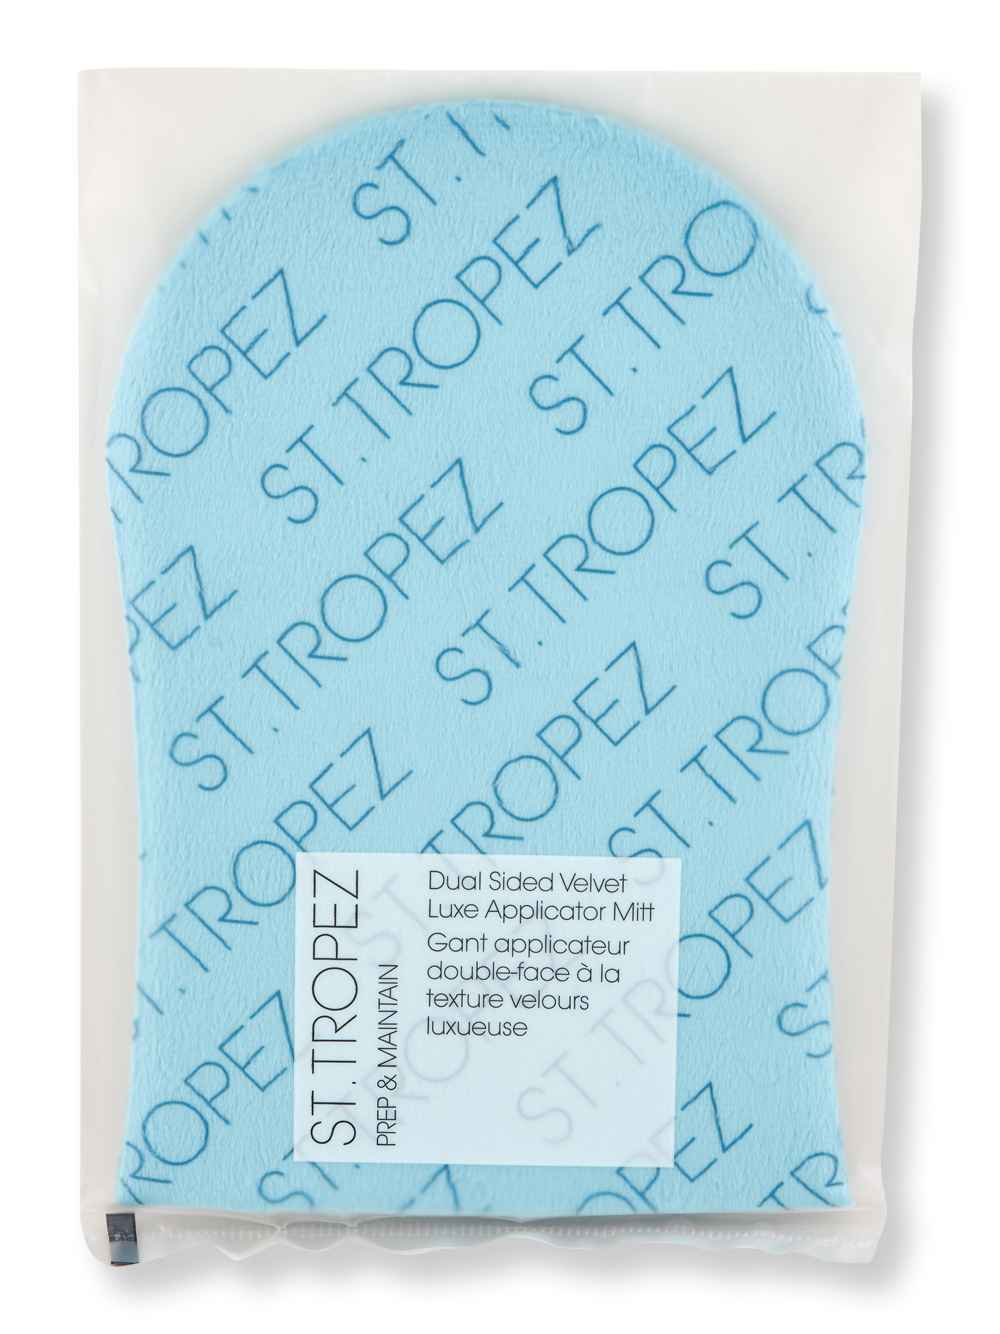 St. Tropez St. Tropez Double Sided Velvet Applicator Mitt Self-Tanning & Bronzing 